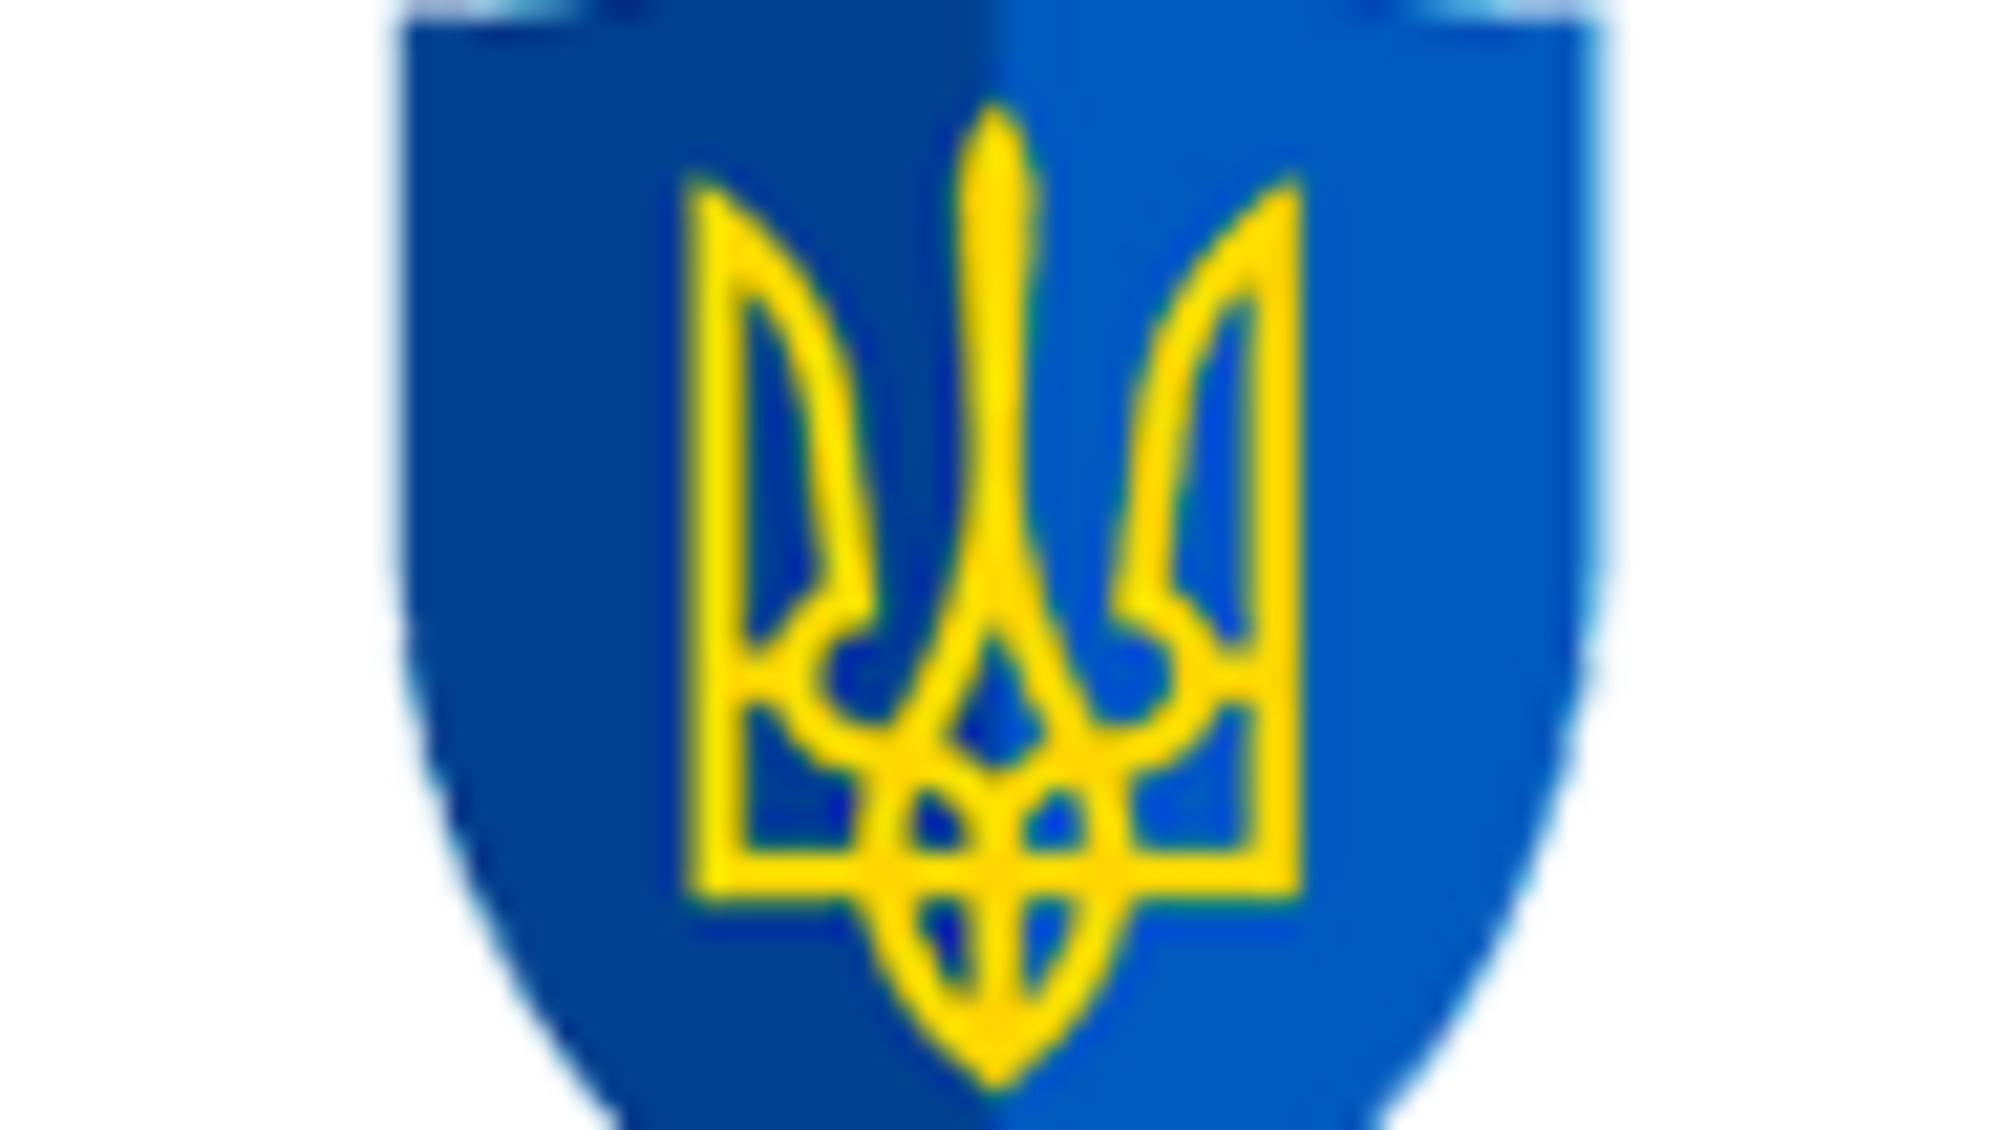 Правоохоронцями Луганщини викрито та припинено реалізацію фальсифікованого алкоголю на території двох областей (ФОТО)